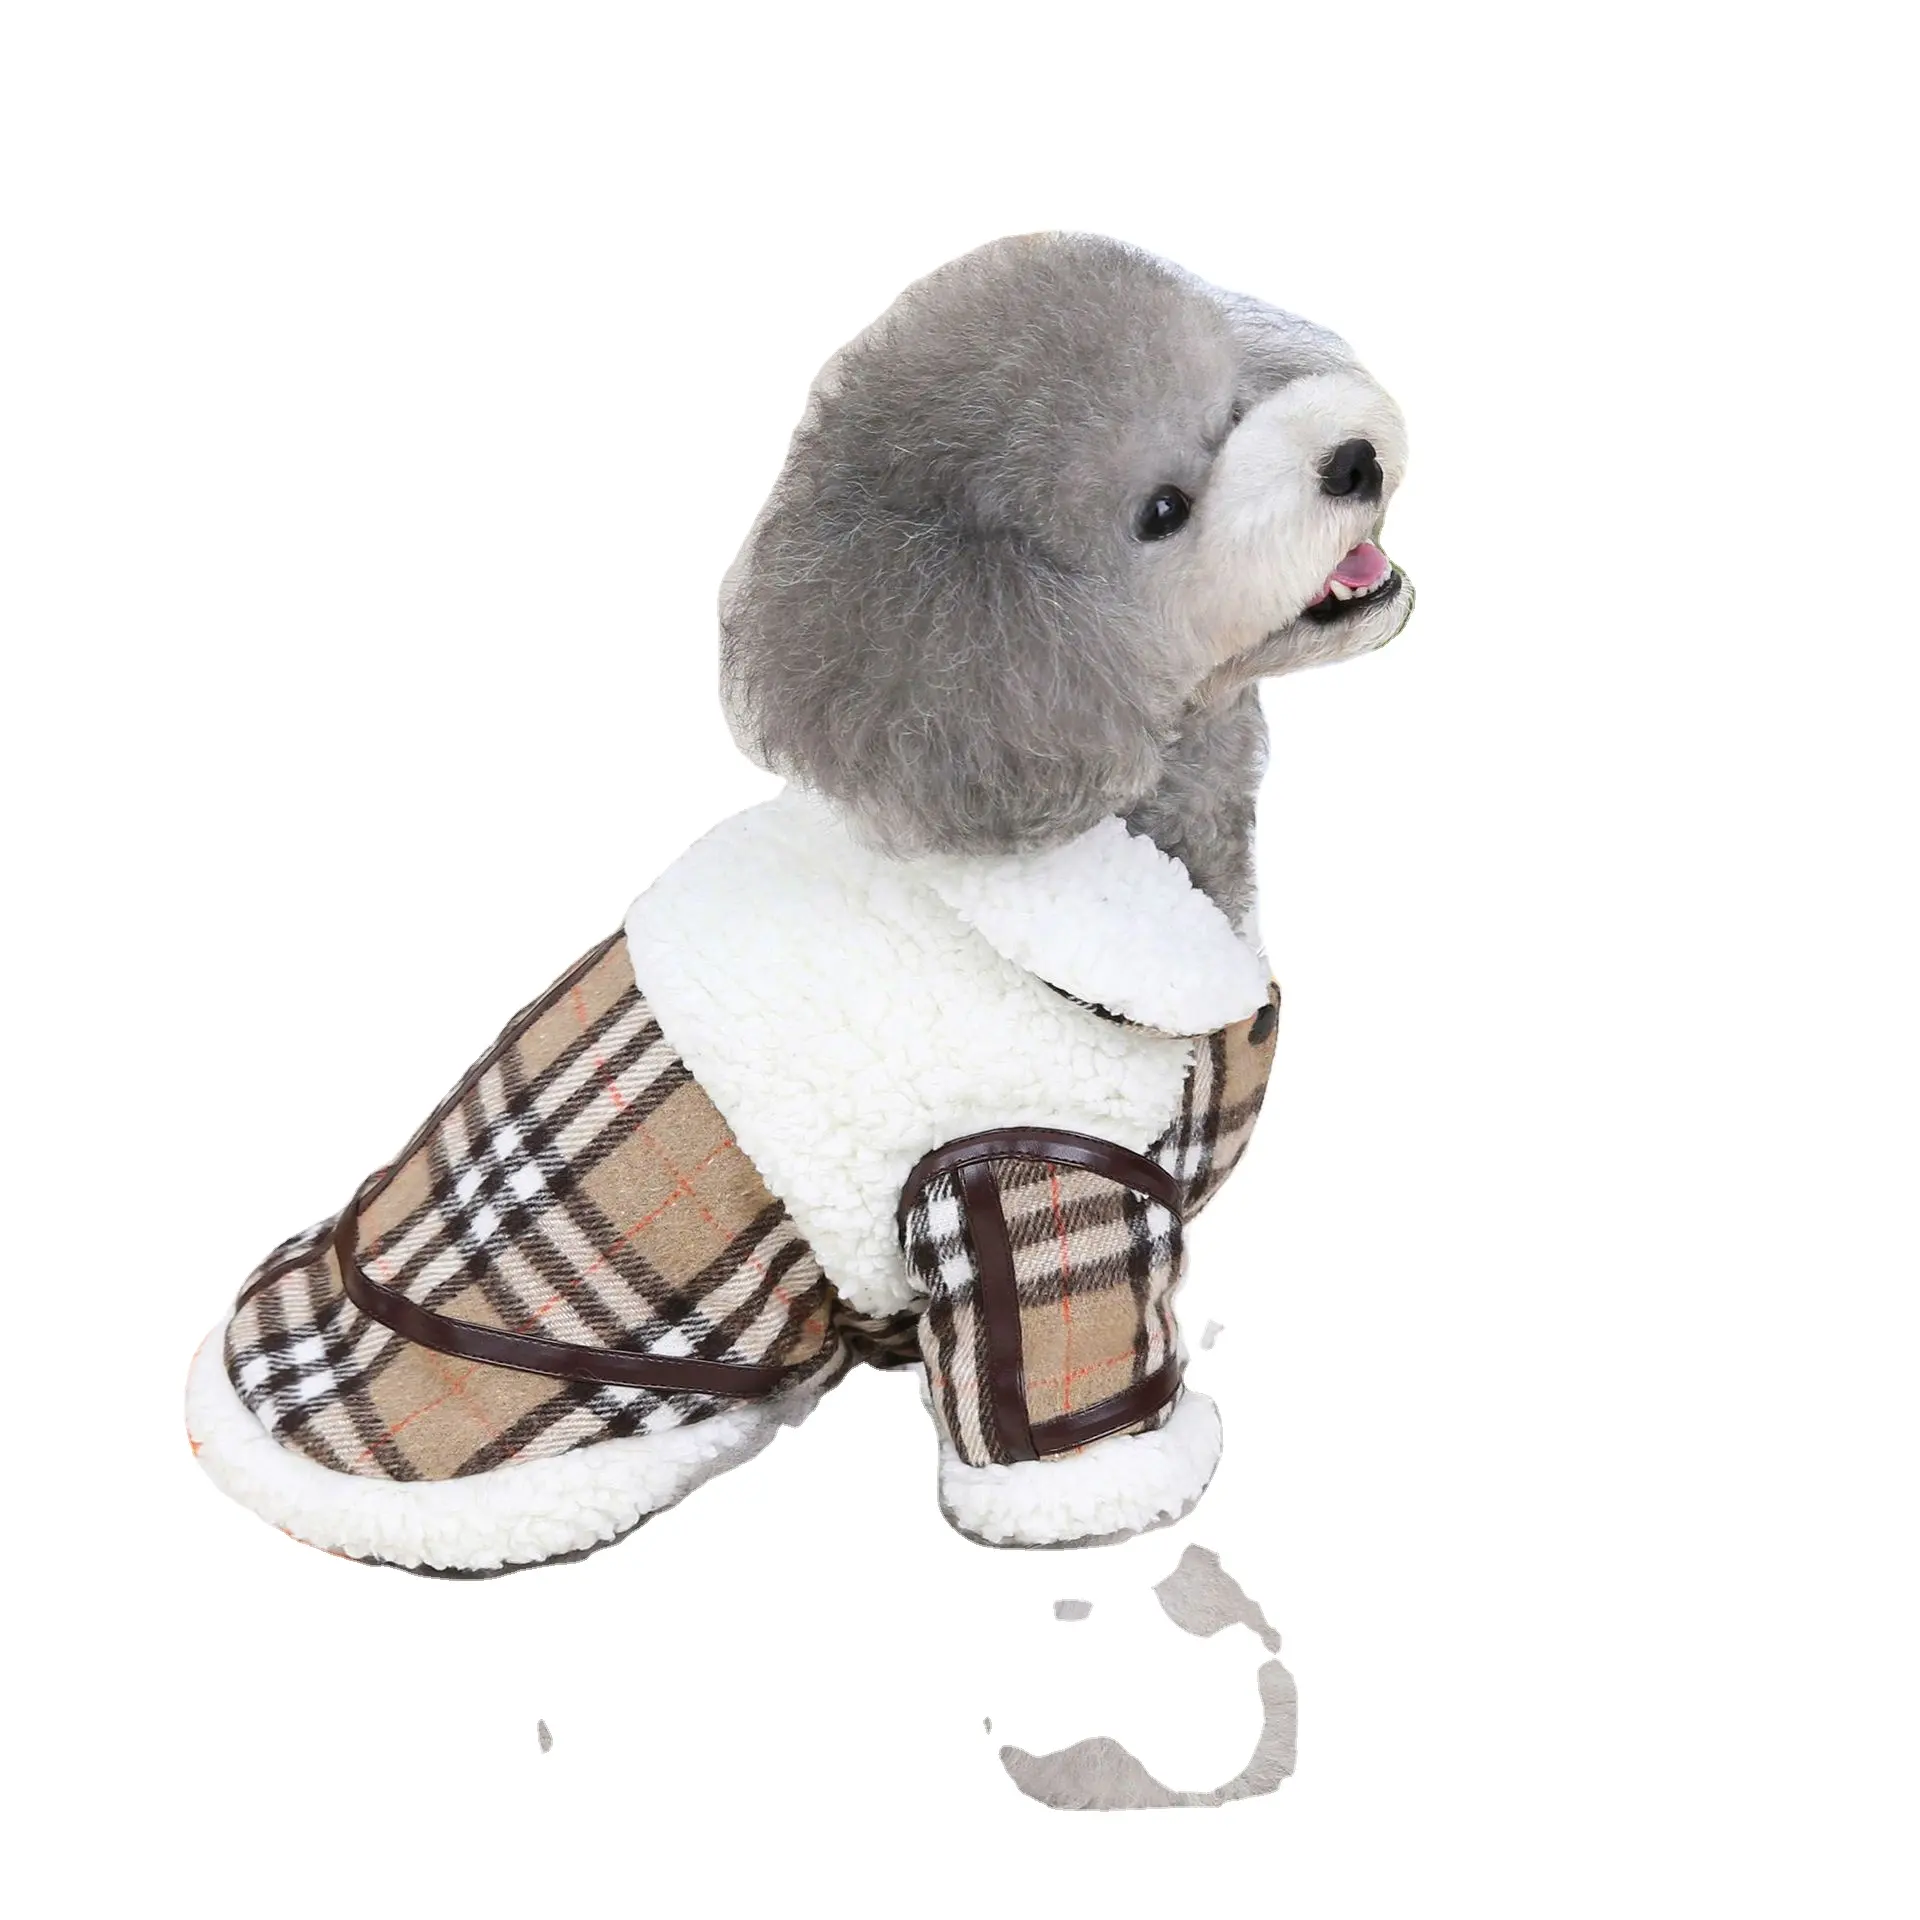 Kingtale प्रतिवर्ती अतिरिक्त गर्म कुत्ते कपड़े मधुर जैकेट ब्रिटिश शैली प्लेड सरल बहुमुखी 2 शैली कुत्ते सर्दियों कोट